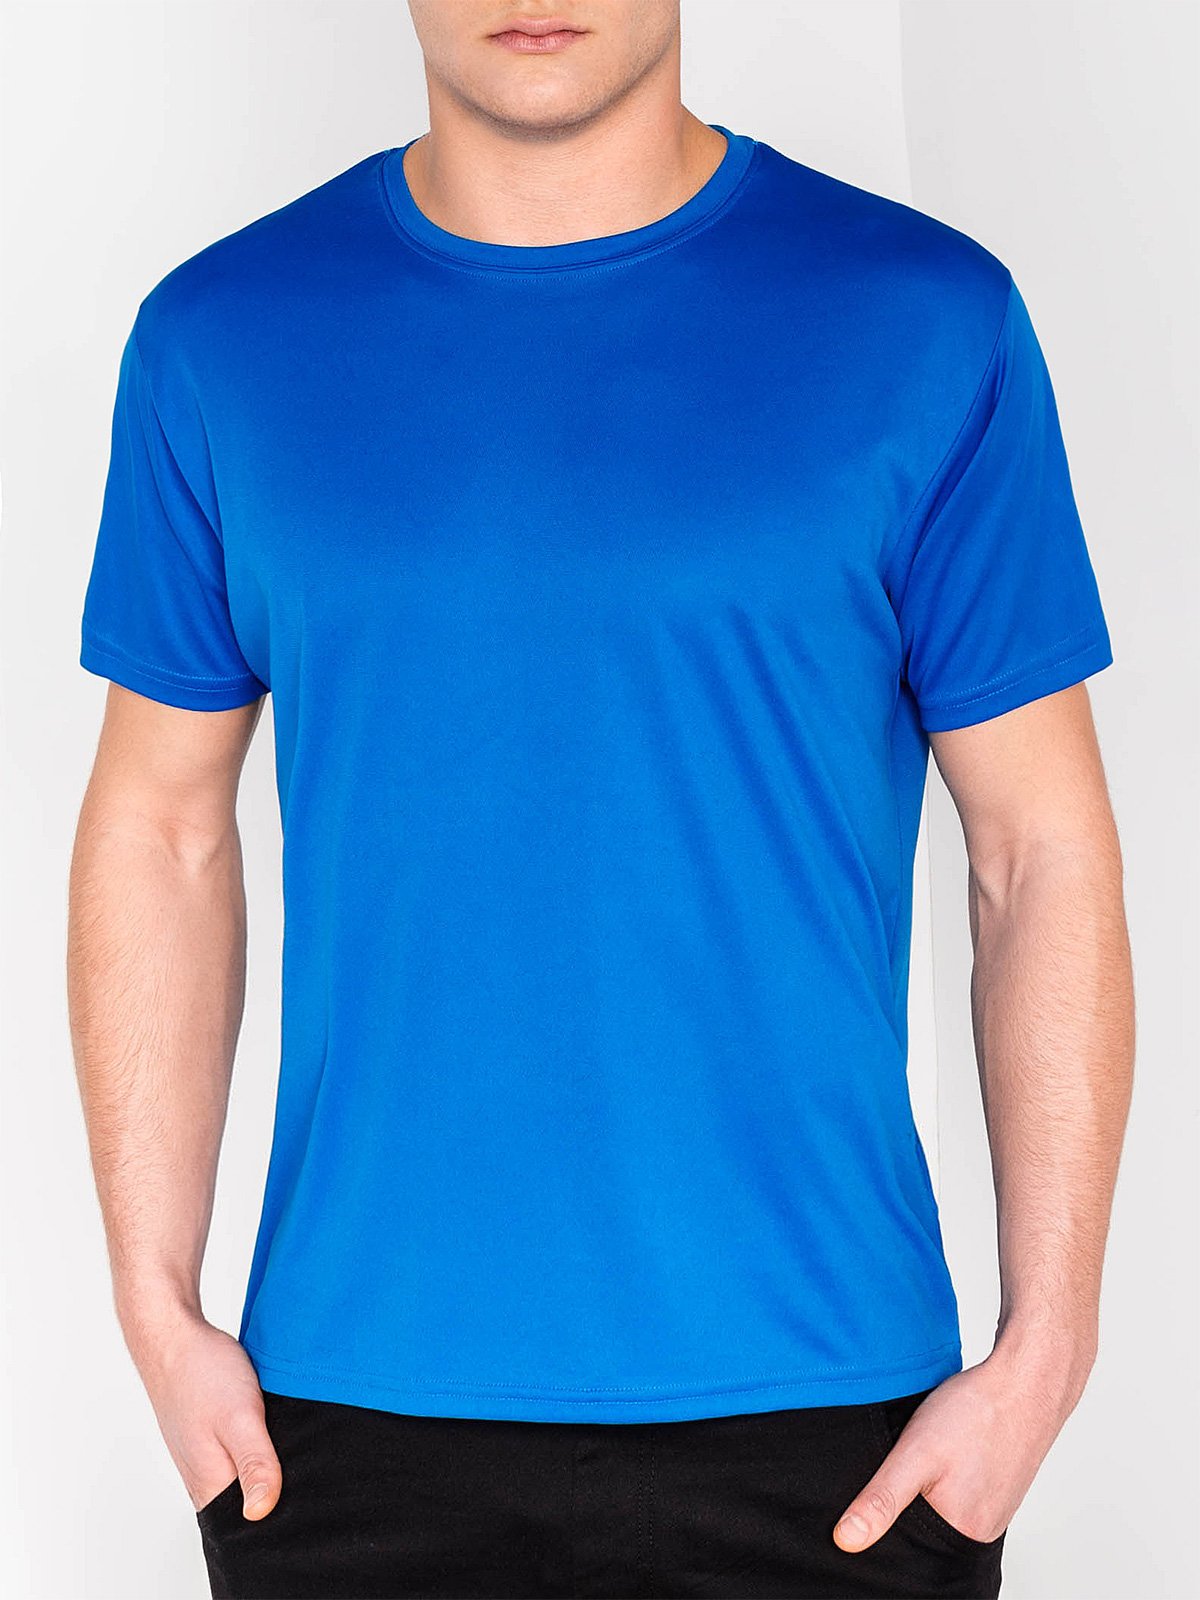 Men's plain t-shirt S883 - blue | MODONE wholesale - Clothing For Men